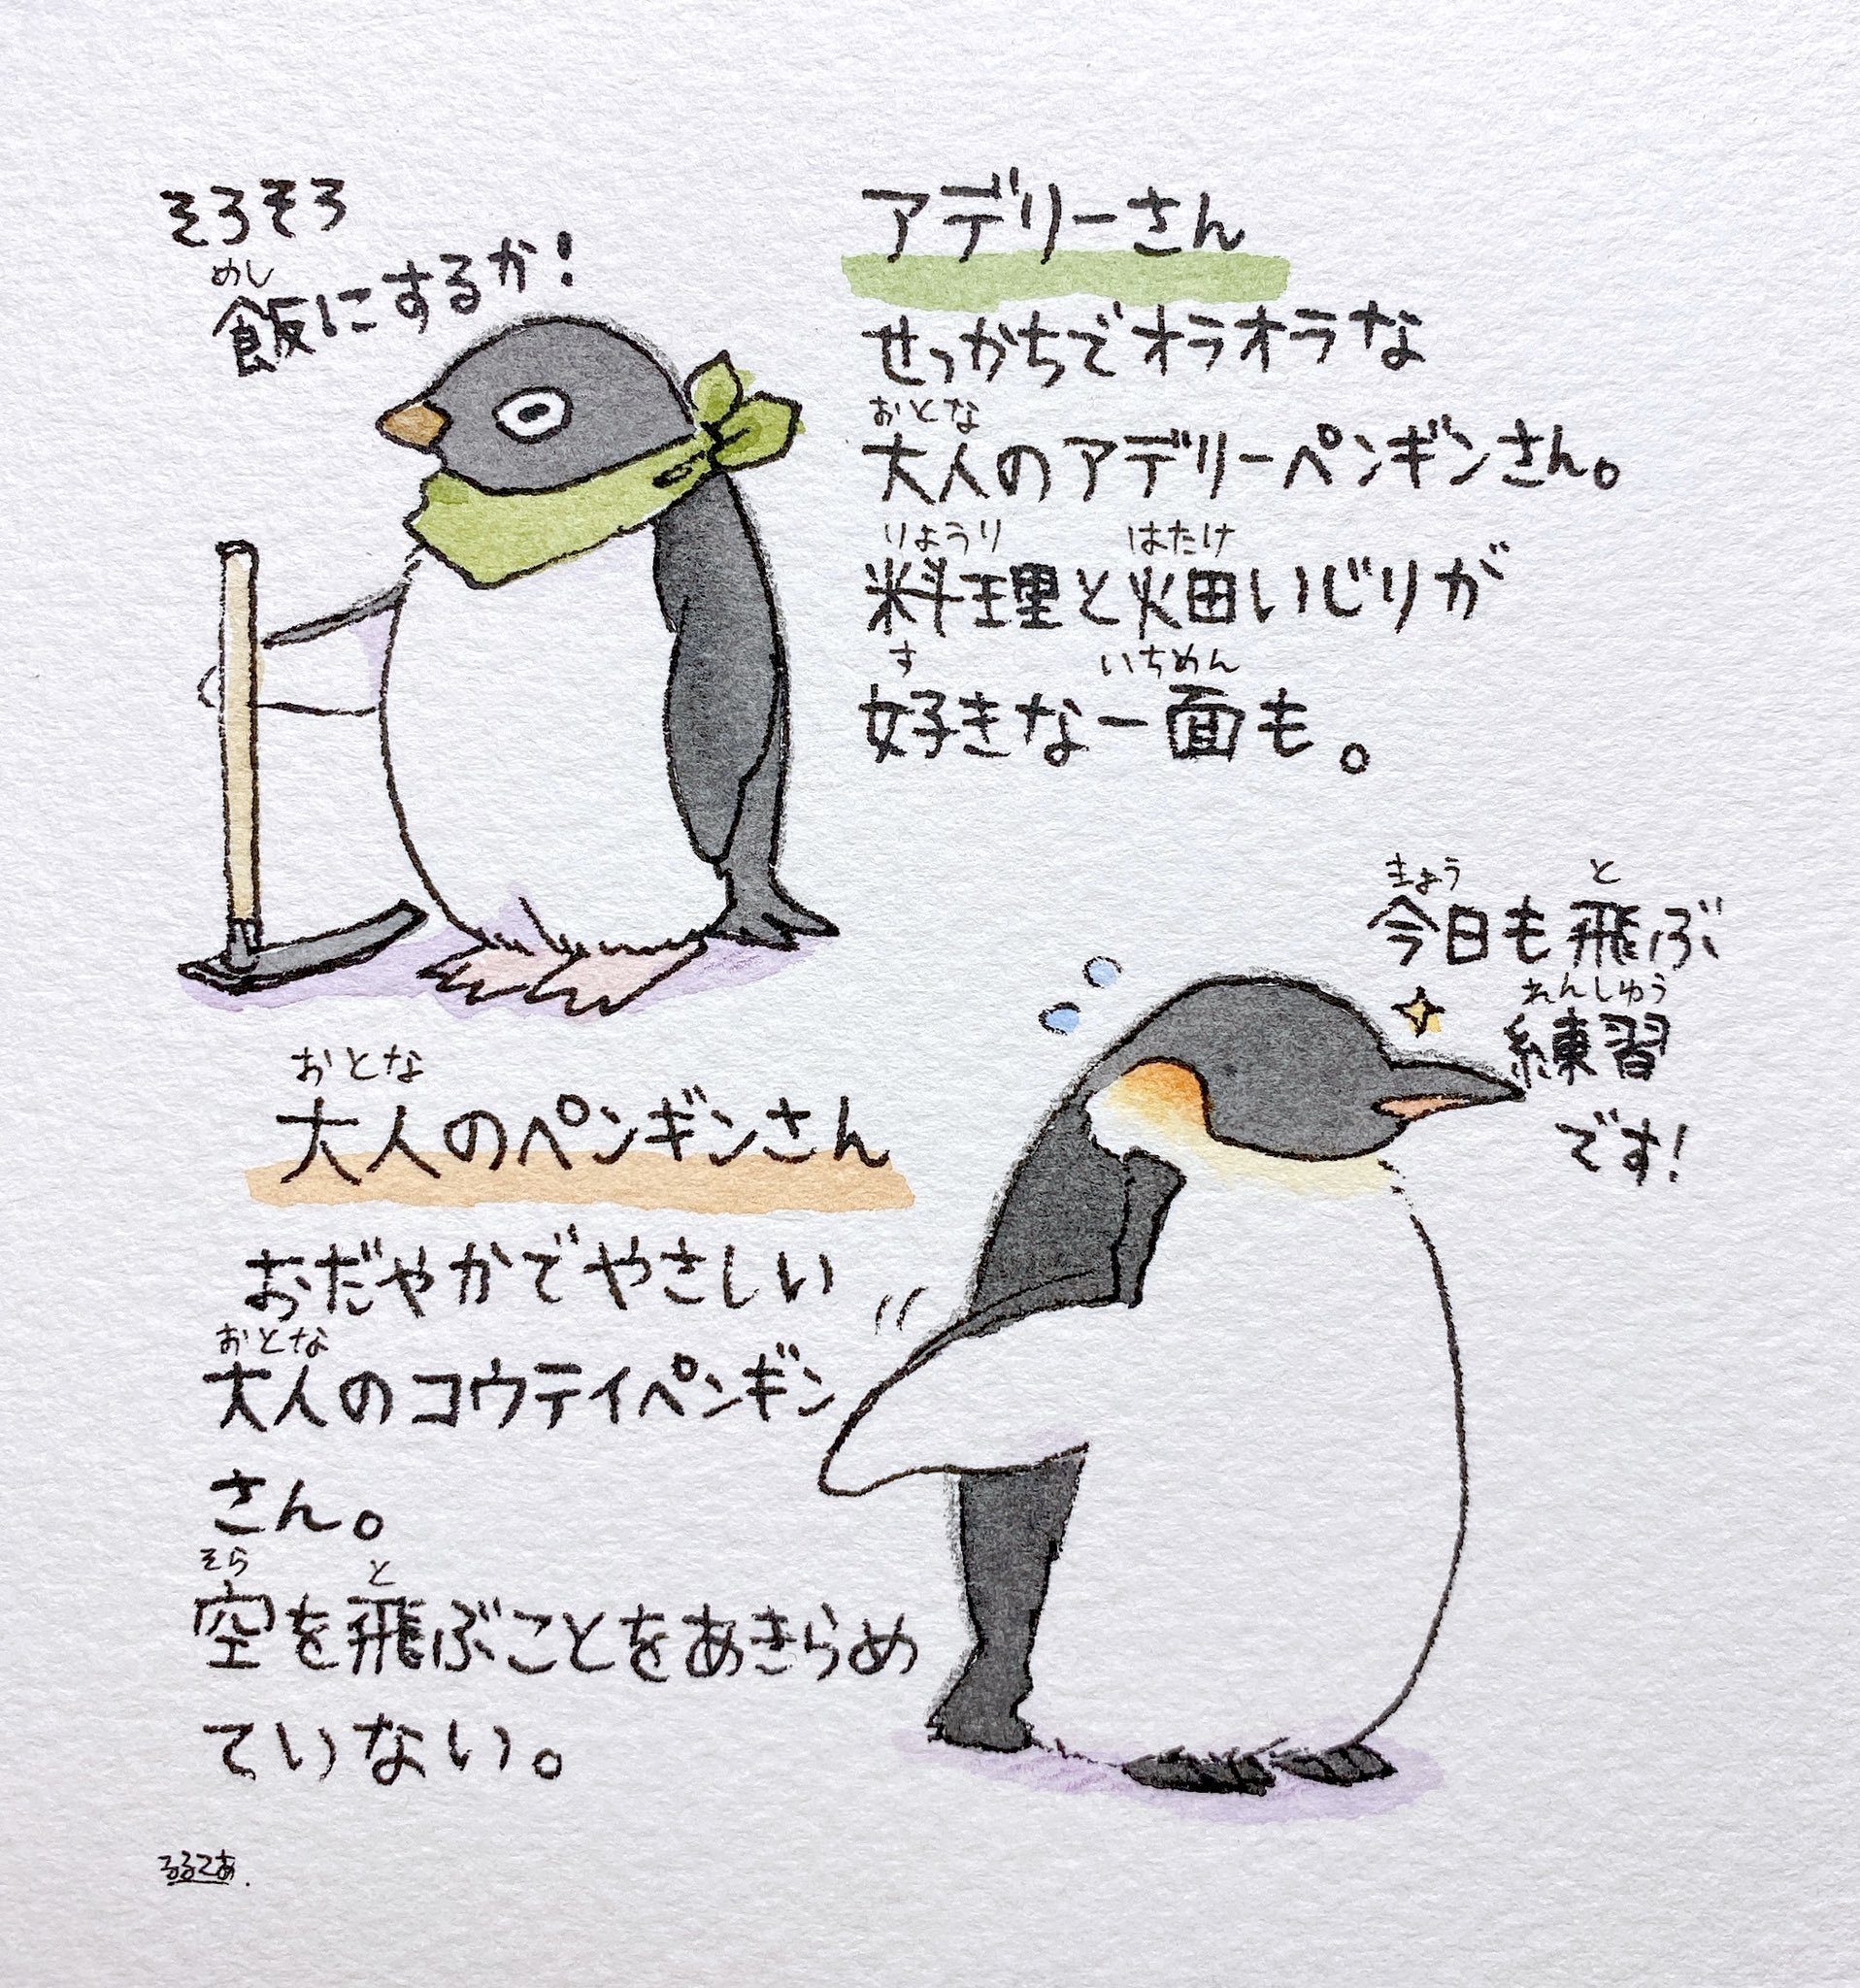 Adelie-san &amp; Adult Penguin-san